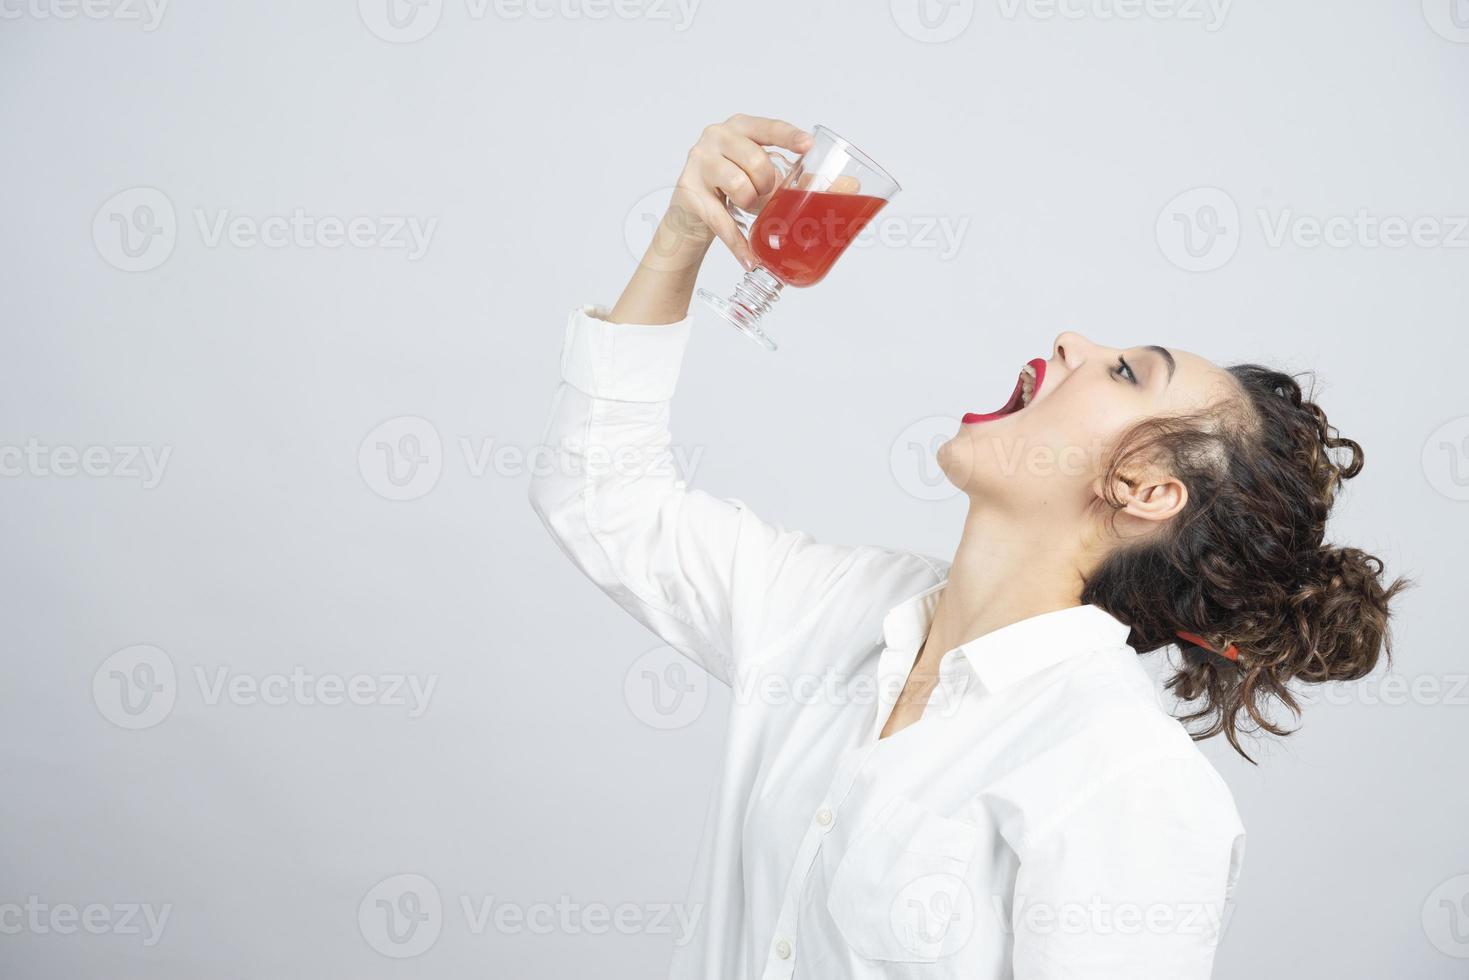 linda mulher em uma roupa branca bebendo um copo de suco vermelho foto